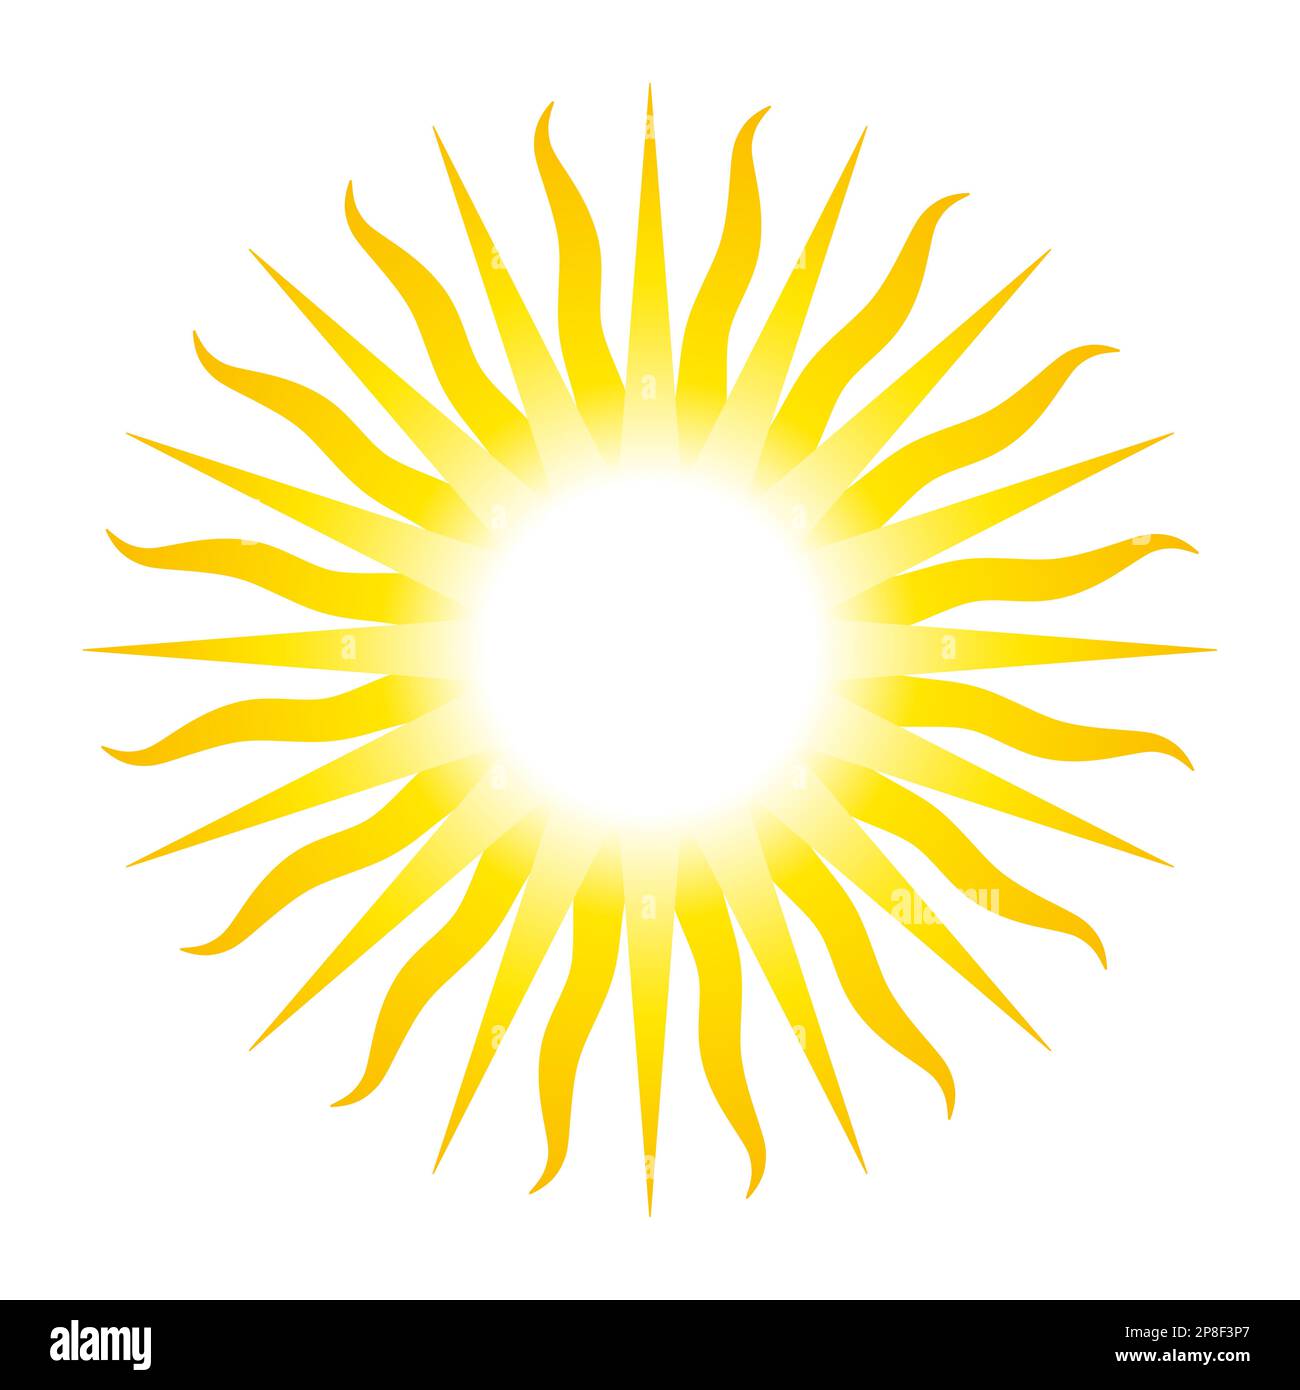 Sonnensymbol mit 32 Strahlen, analog zur Sonne des Monats Mai, nationales Emblem von Argentinien und Uruguay. Strahlend goldgelbe Solarscheibe. Stockfoto